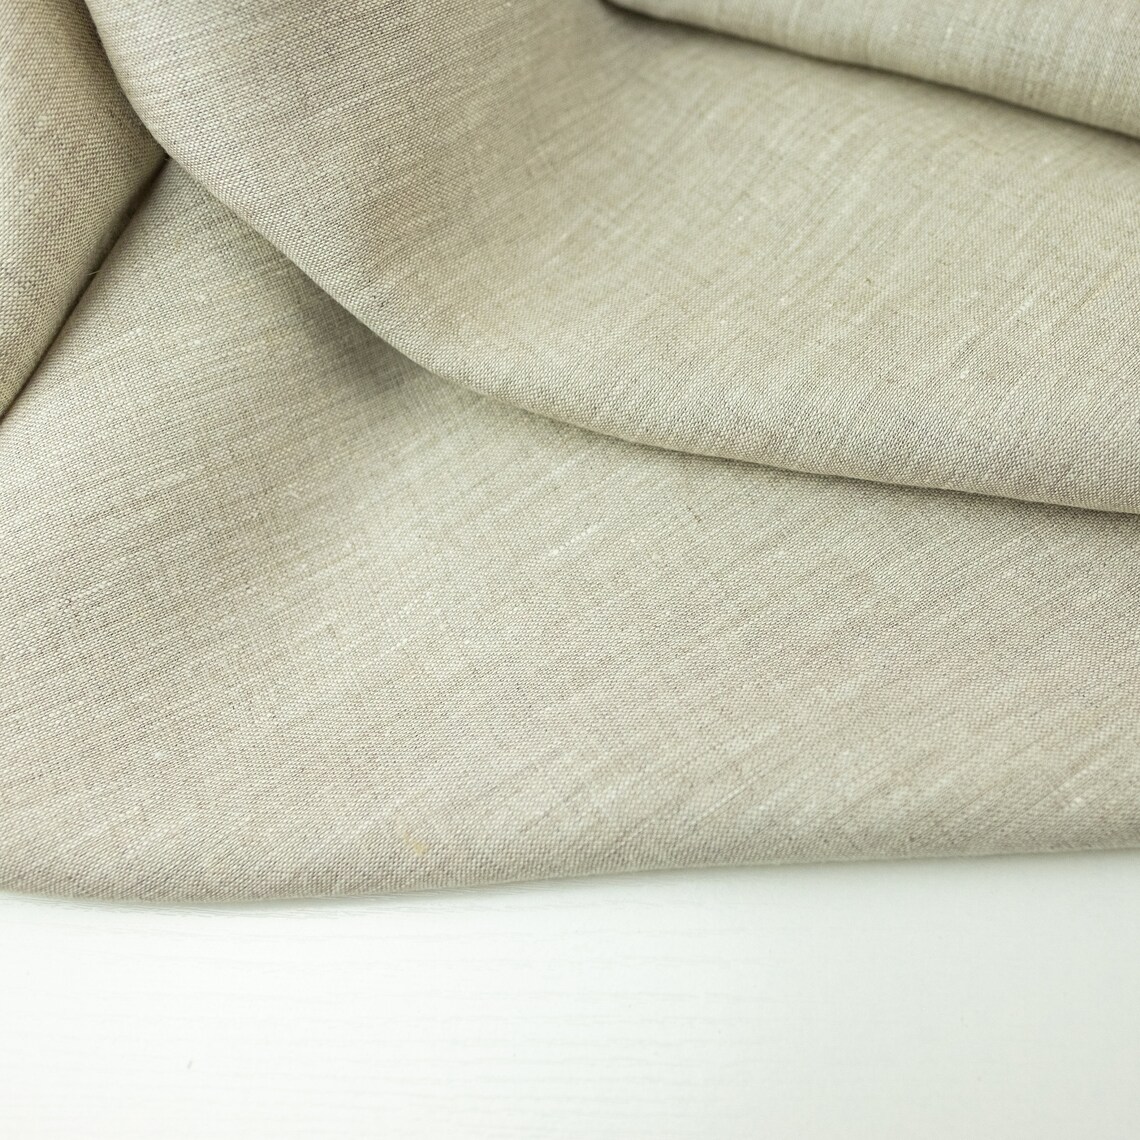 Natural linen fabric. Medium weight linen fabric. 100% Linen. | Etsy